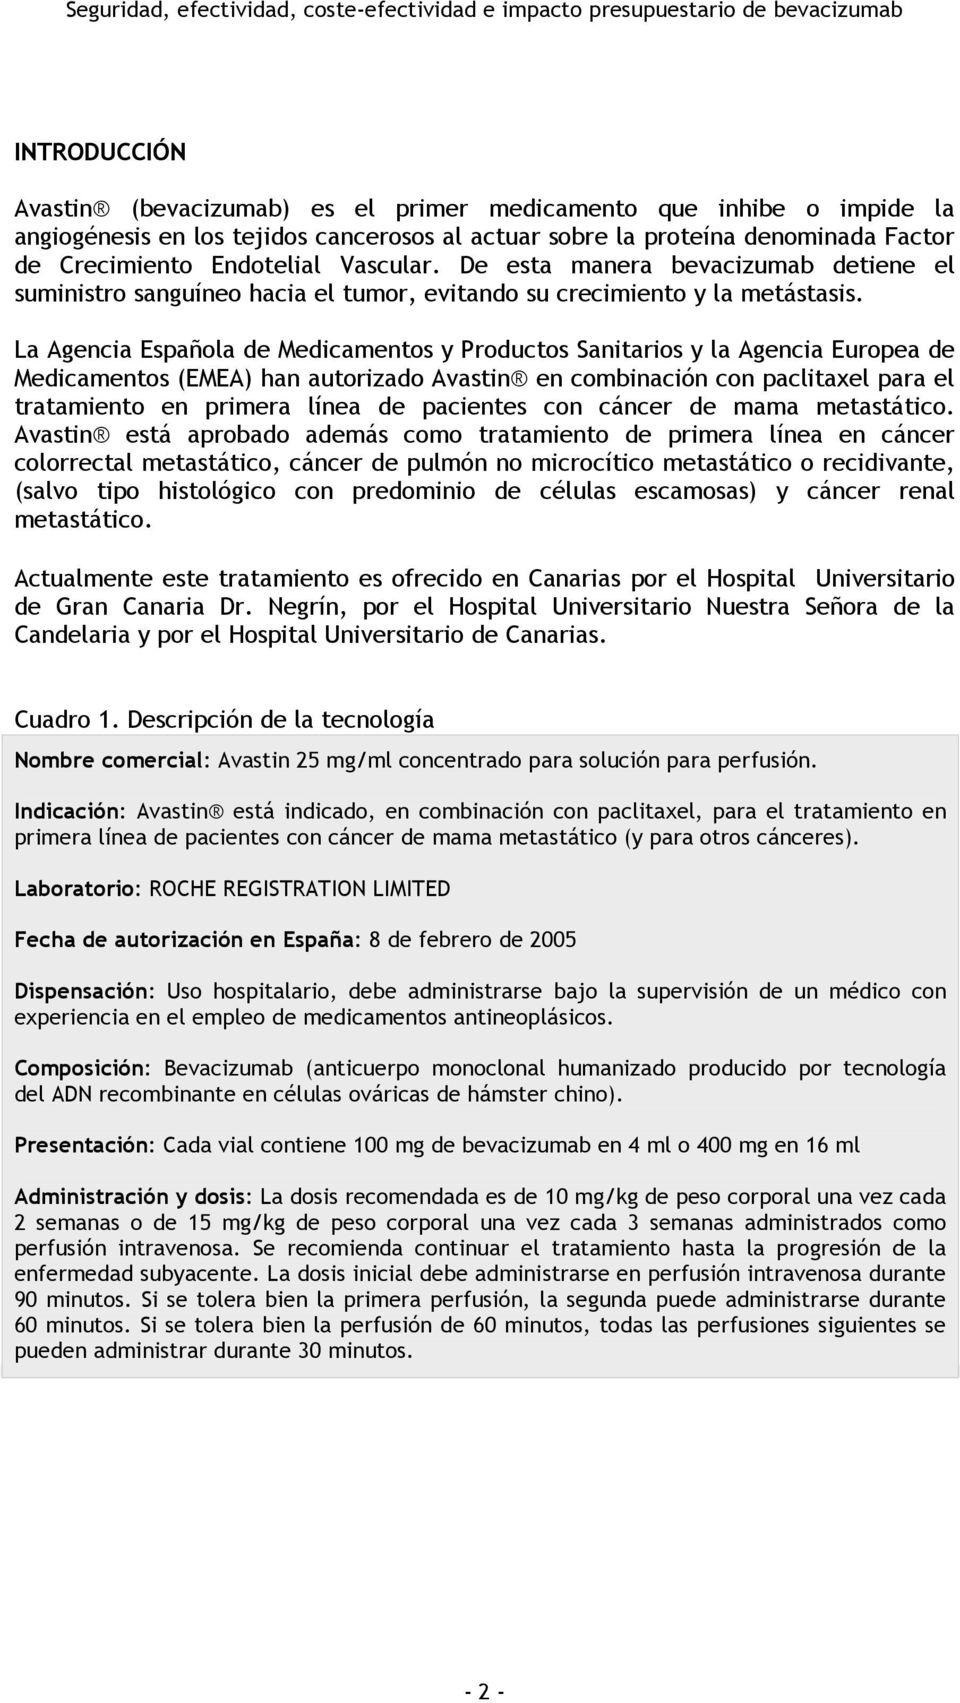 La Agencia Española de Medicamentos y Productos Sanitarios y la Agencia Europea de Medicamentos (EMEA) han autorizado Avastin en combinación con paclitaxel para el tratamiento en primera línea de